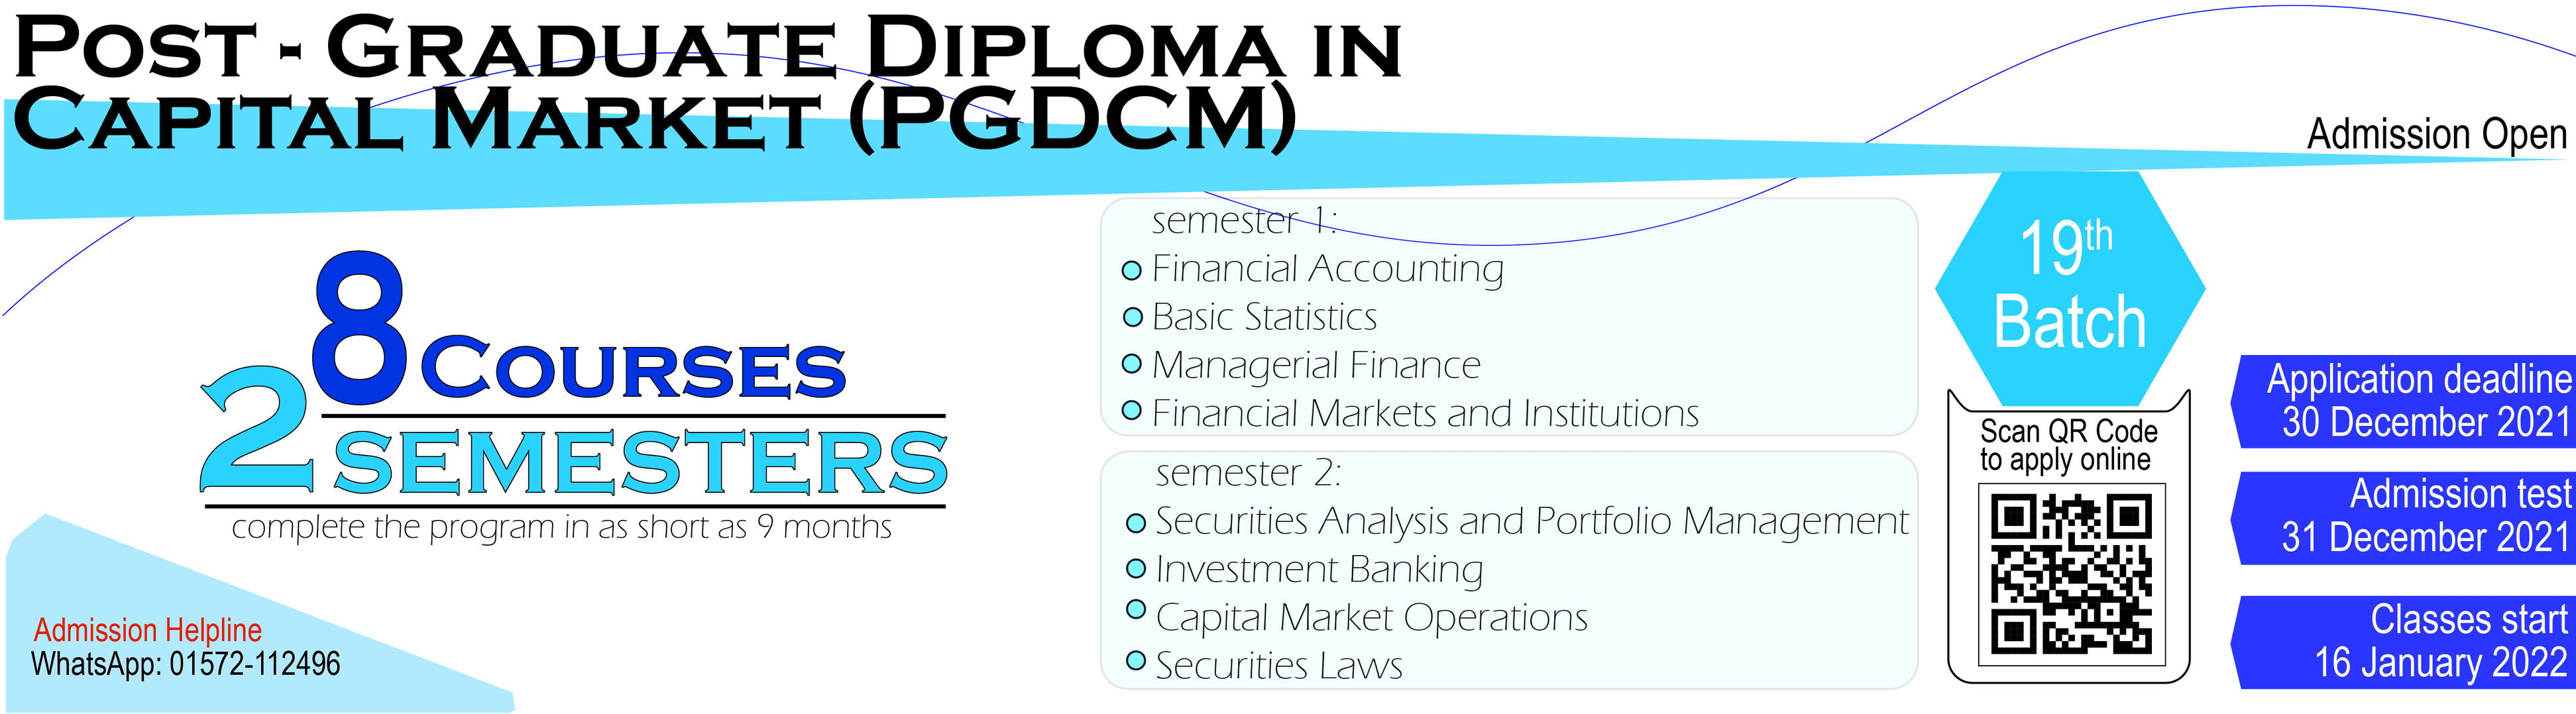 Post Graduate Diploma in Capital Market (PGDCM) at BICM